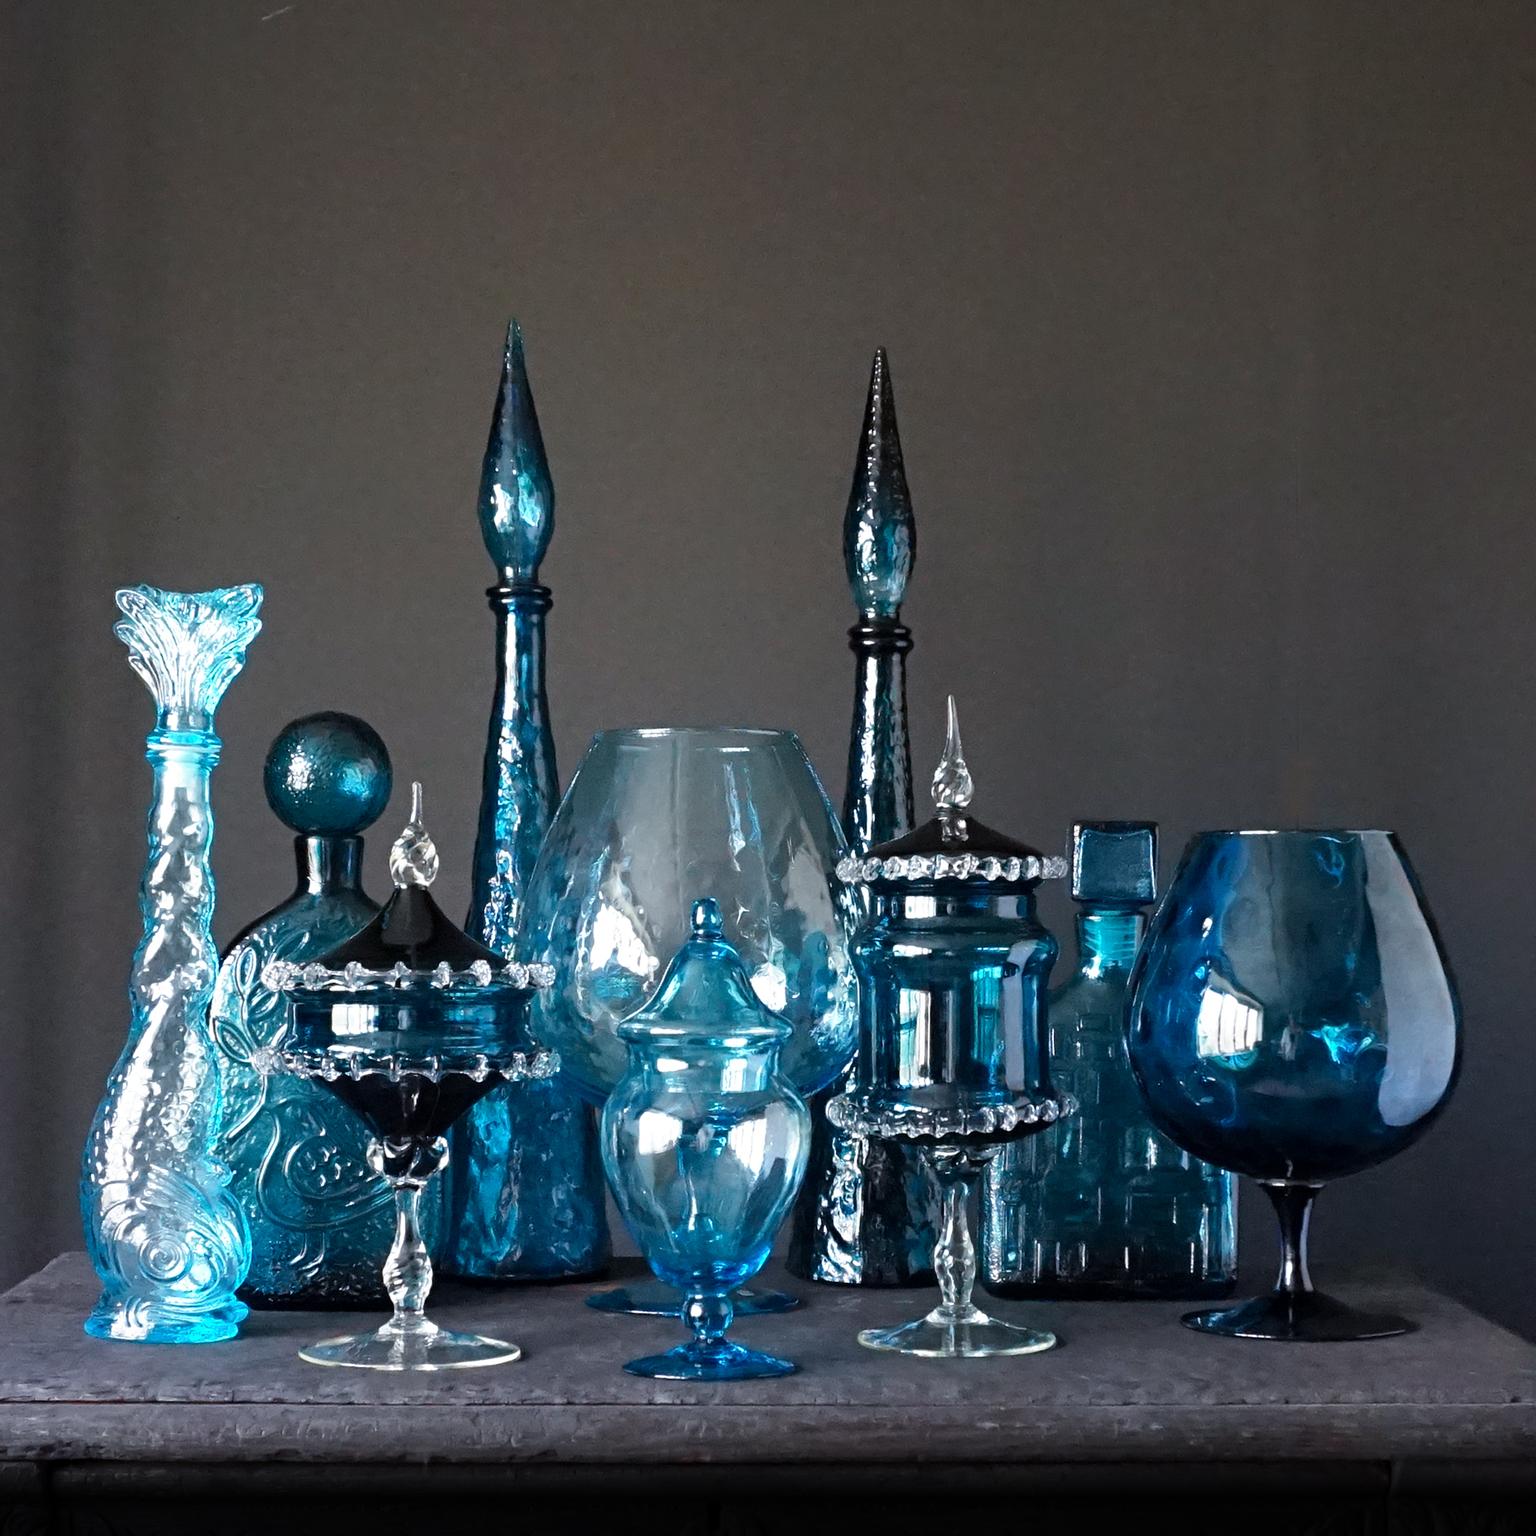 Ensemble bleu très décoratif de dix bouteilles italiennes en verre soufflé et pressé de différentes tailles.
Deux bouteilles de génie pressées, une carafe pressée à motif d'oiseau, une carafe carrée pressée, une carafe pressée à poisson, deux